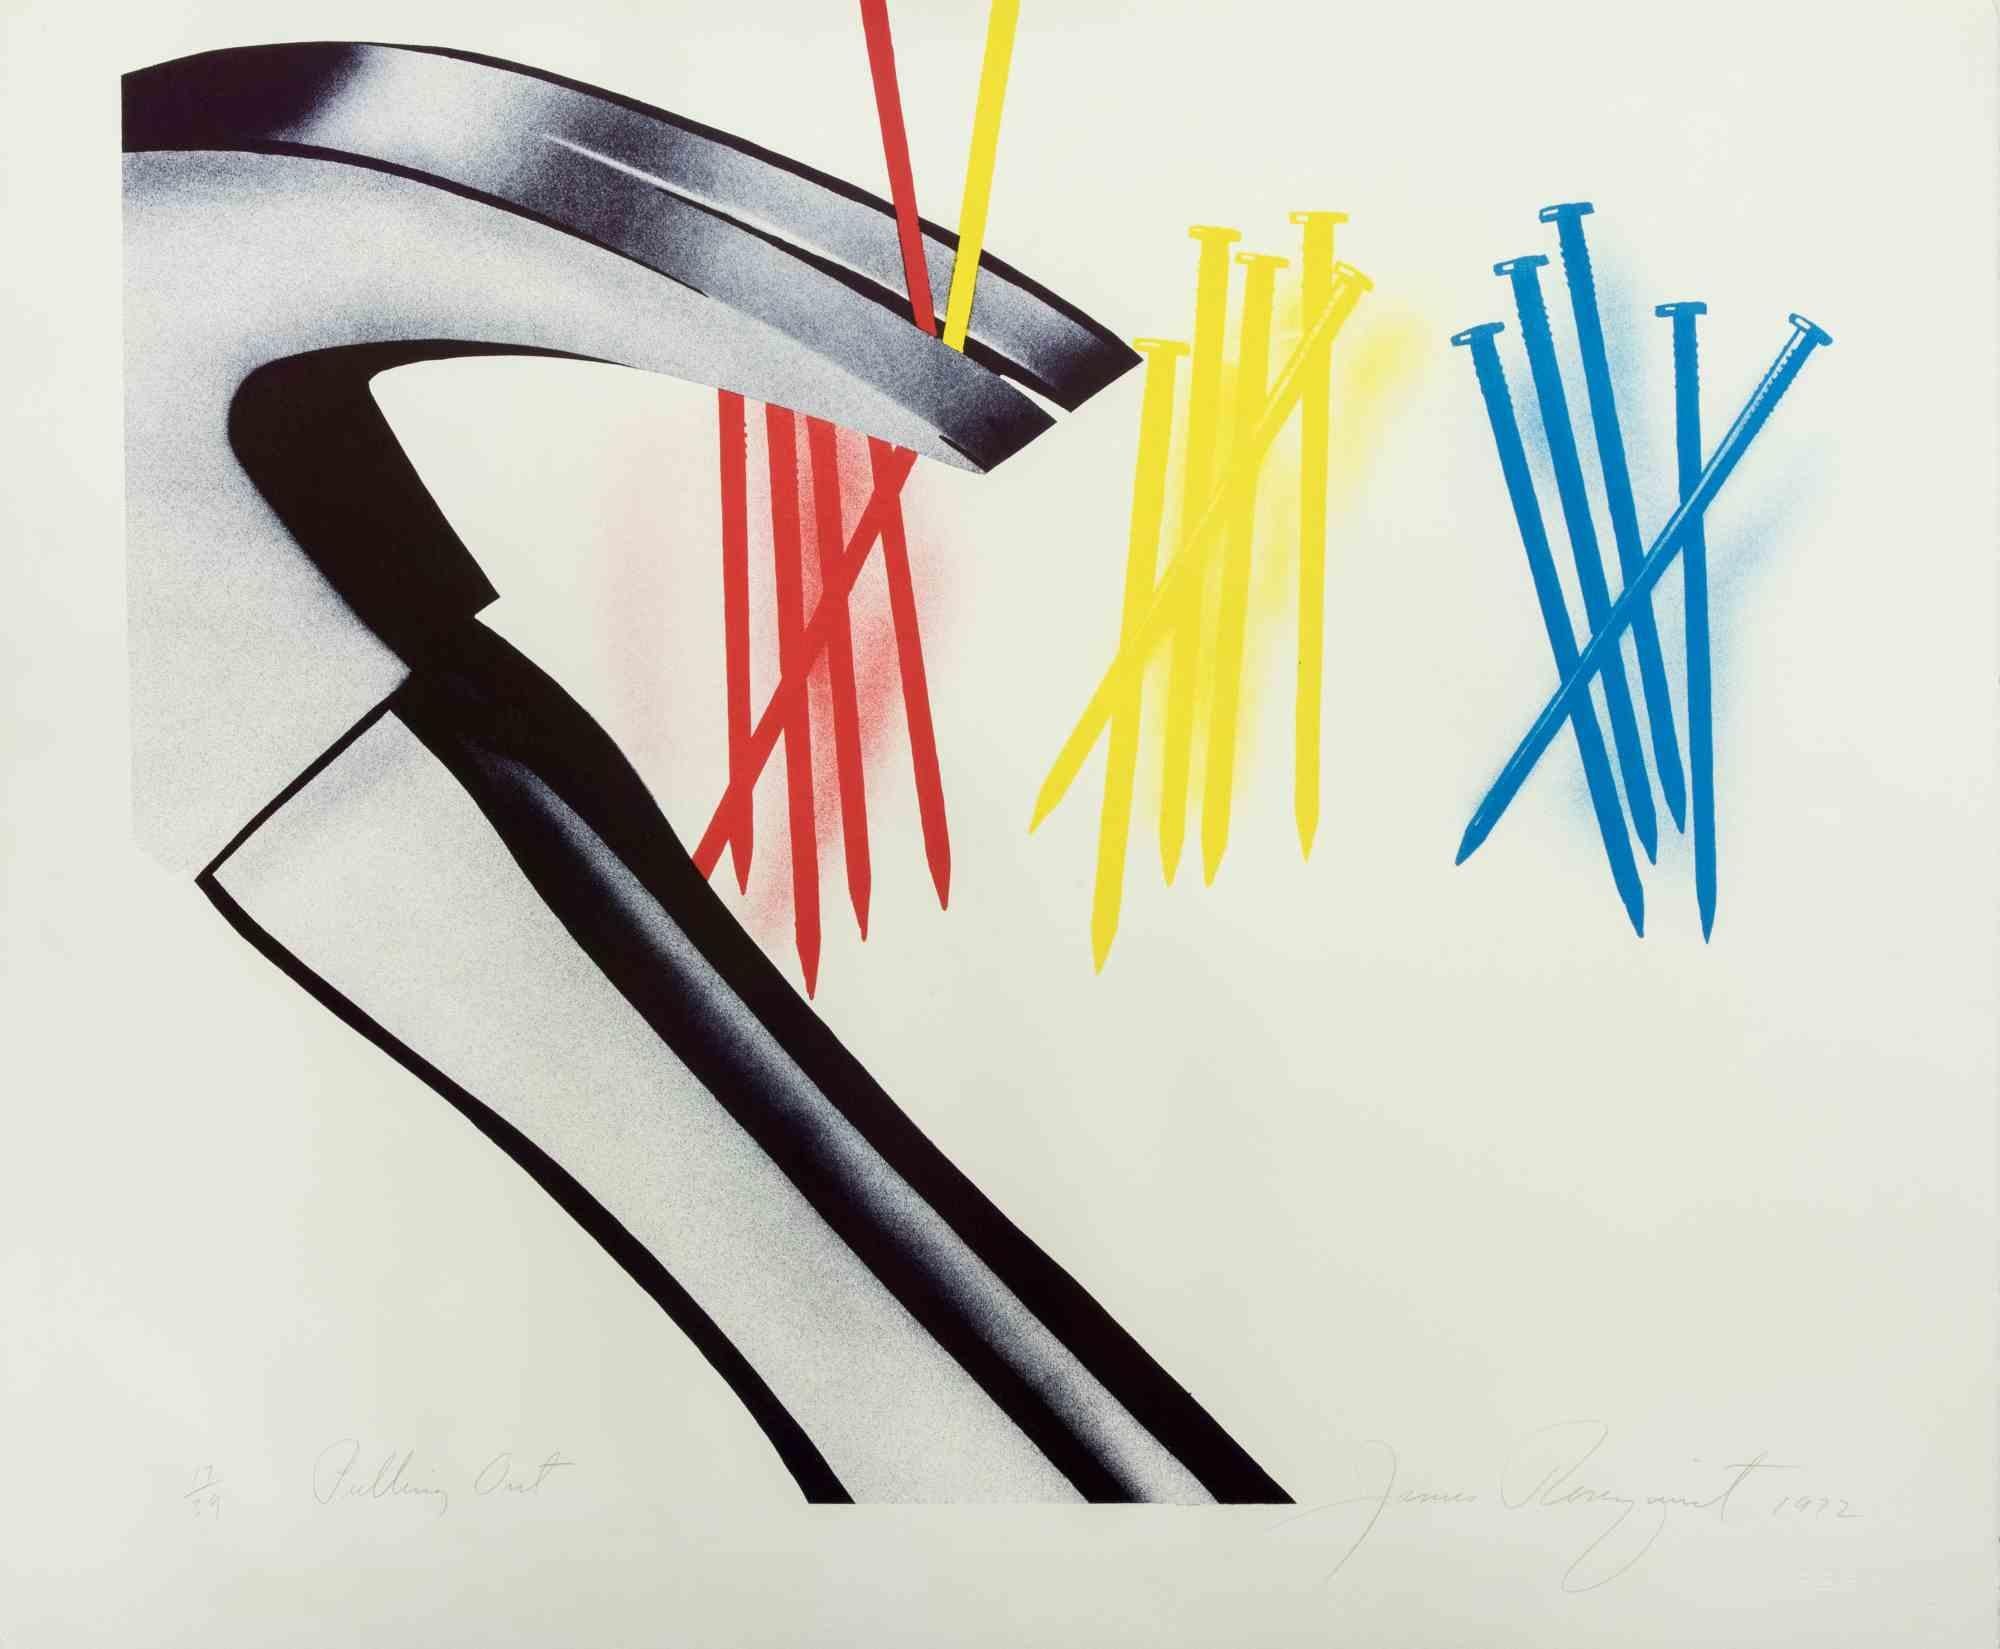 Pulling Out ist ein Kunstwerk von James Rosenquist aus dem Jahr 1972.

Farblithographie auf Arches-Papier.

Handsigniert und datiert von James Rosenquist (North Dakota, 1933 - 2017) in Bleistift im unteren rechten Rand.

Gedruckt und herausgegeben